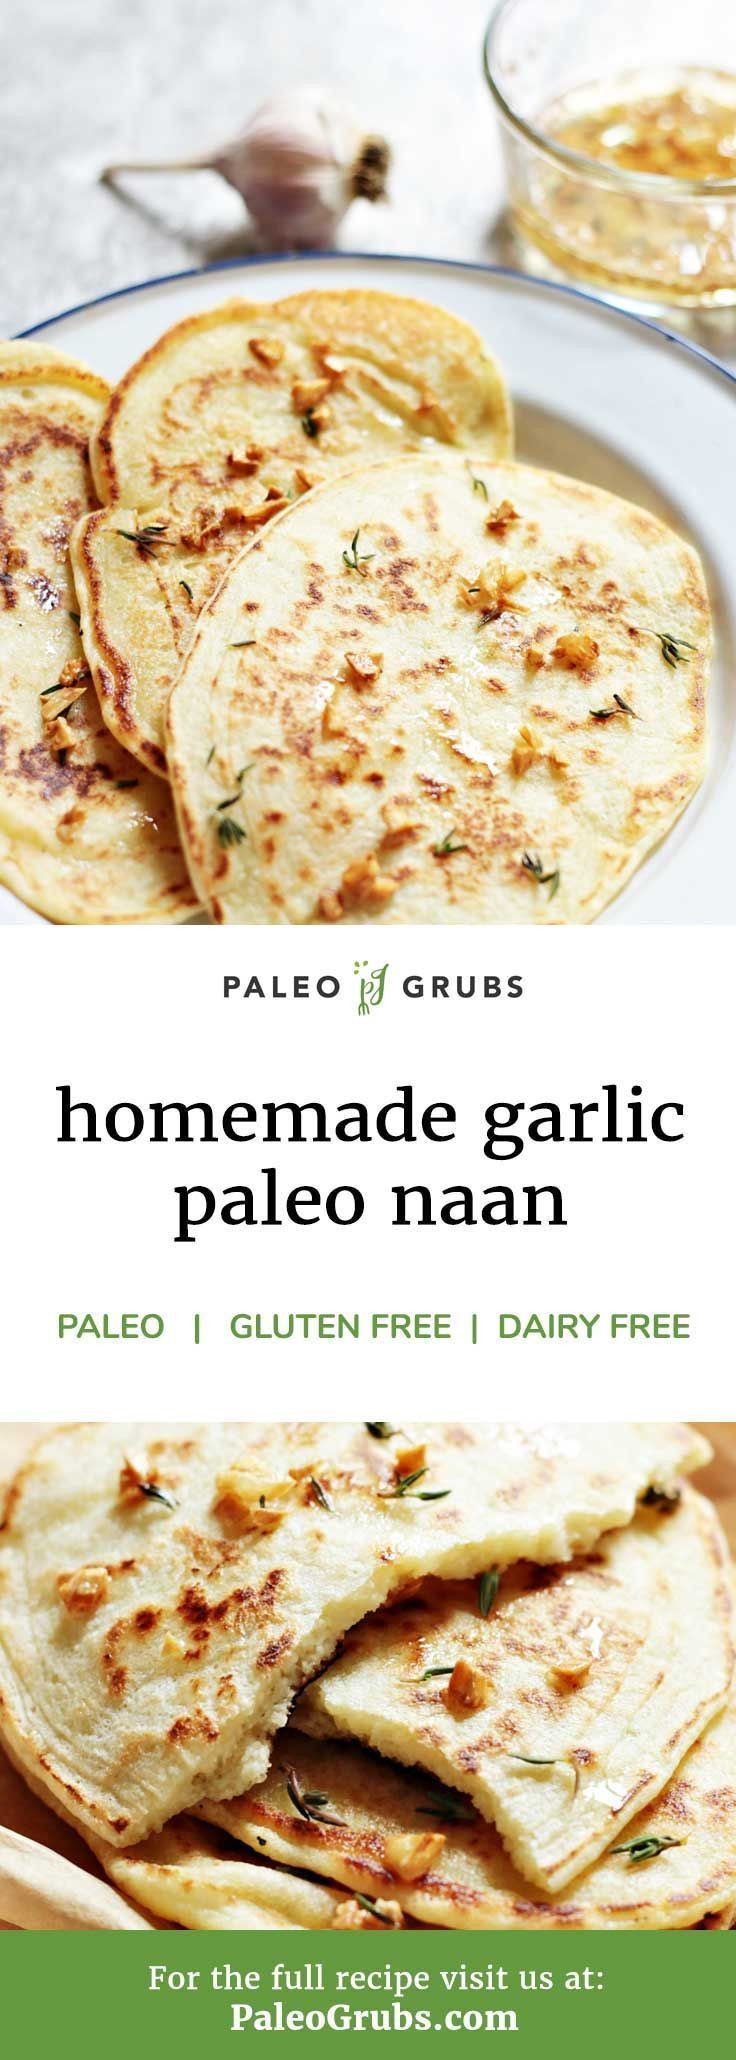 Quick Naan Bread Recipe
 Paleo Garlic Naan Bread Quick and Easy Recipe